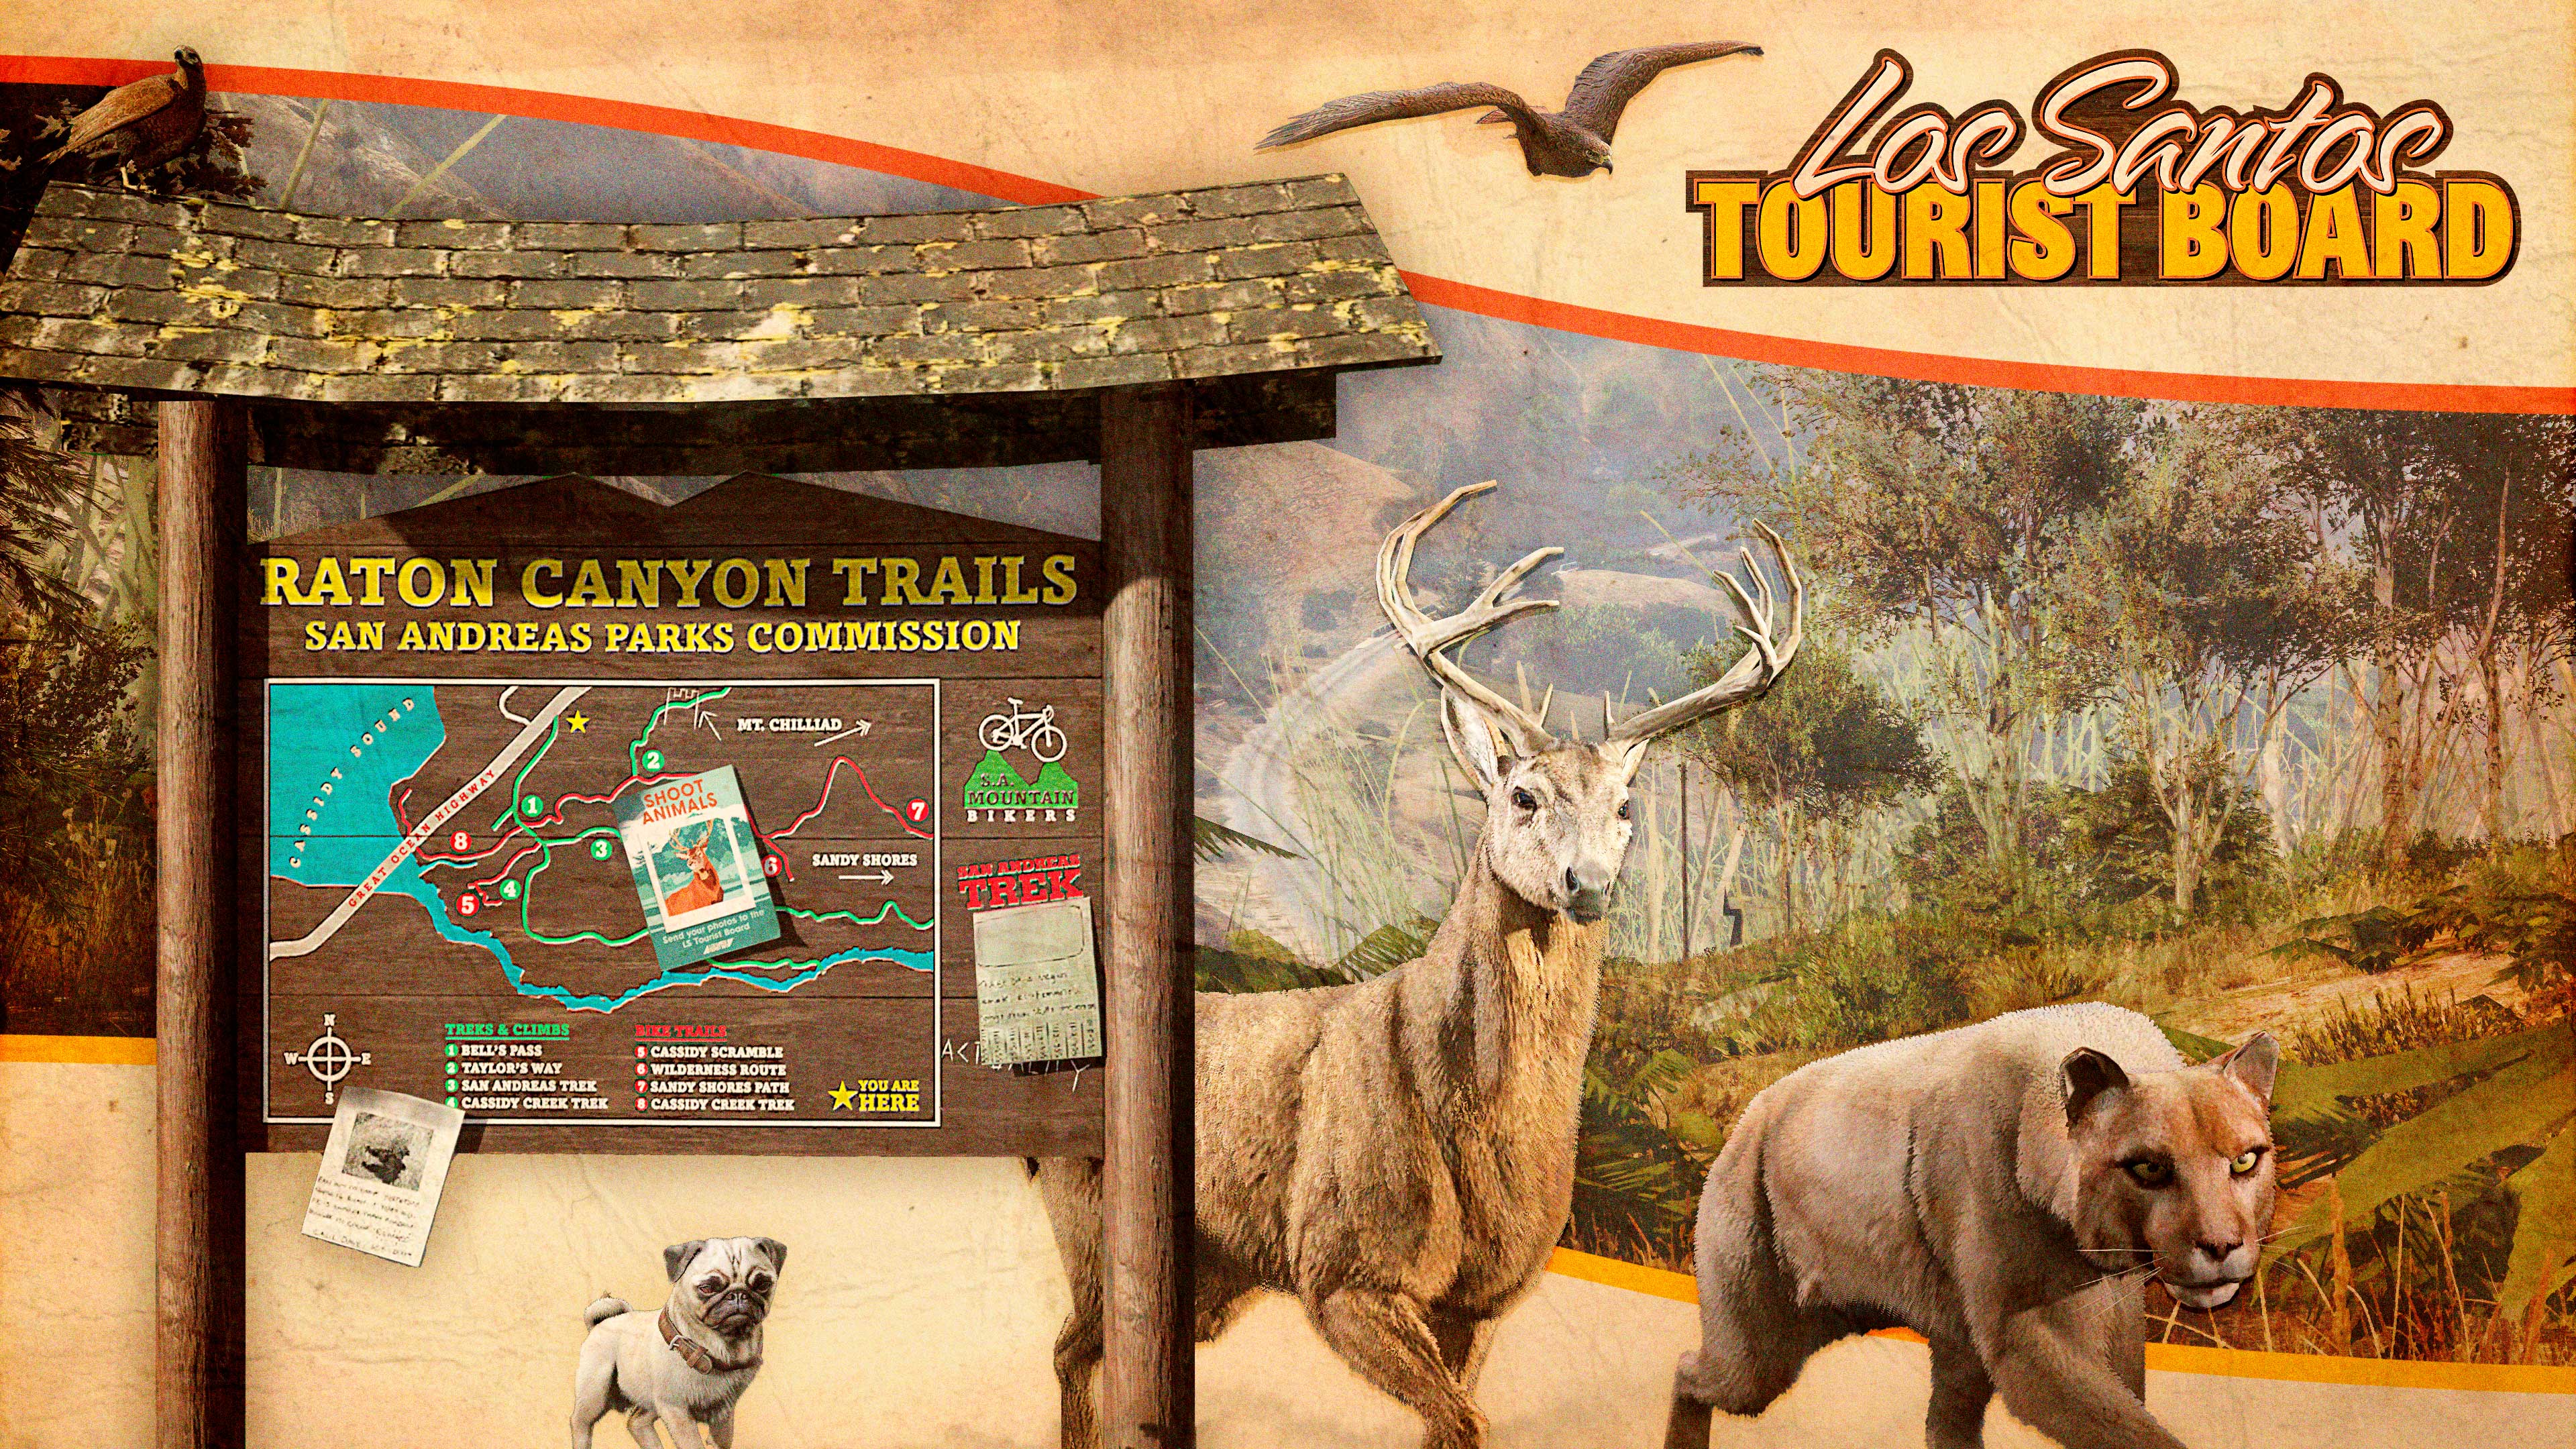 Un póster de un tablero de turismo de Los Santos que muestra caminos de Raton Canyon y animales salvajes, entre ellos un pájaro, un ciervo, un puma y un pug.